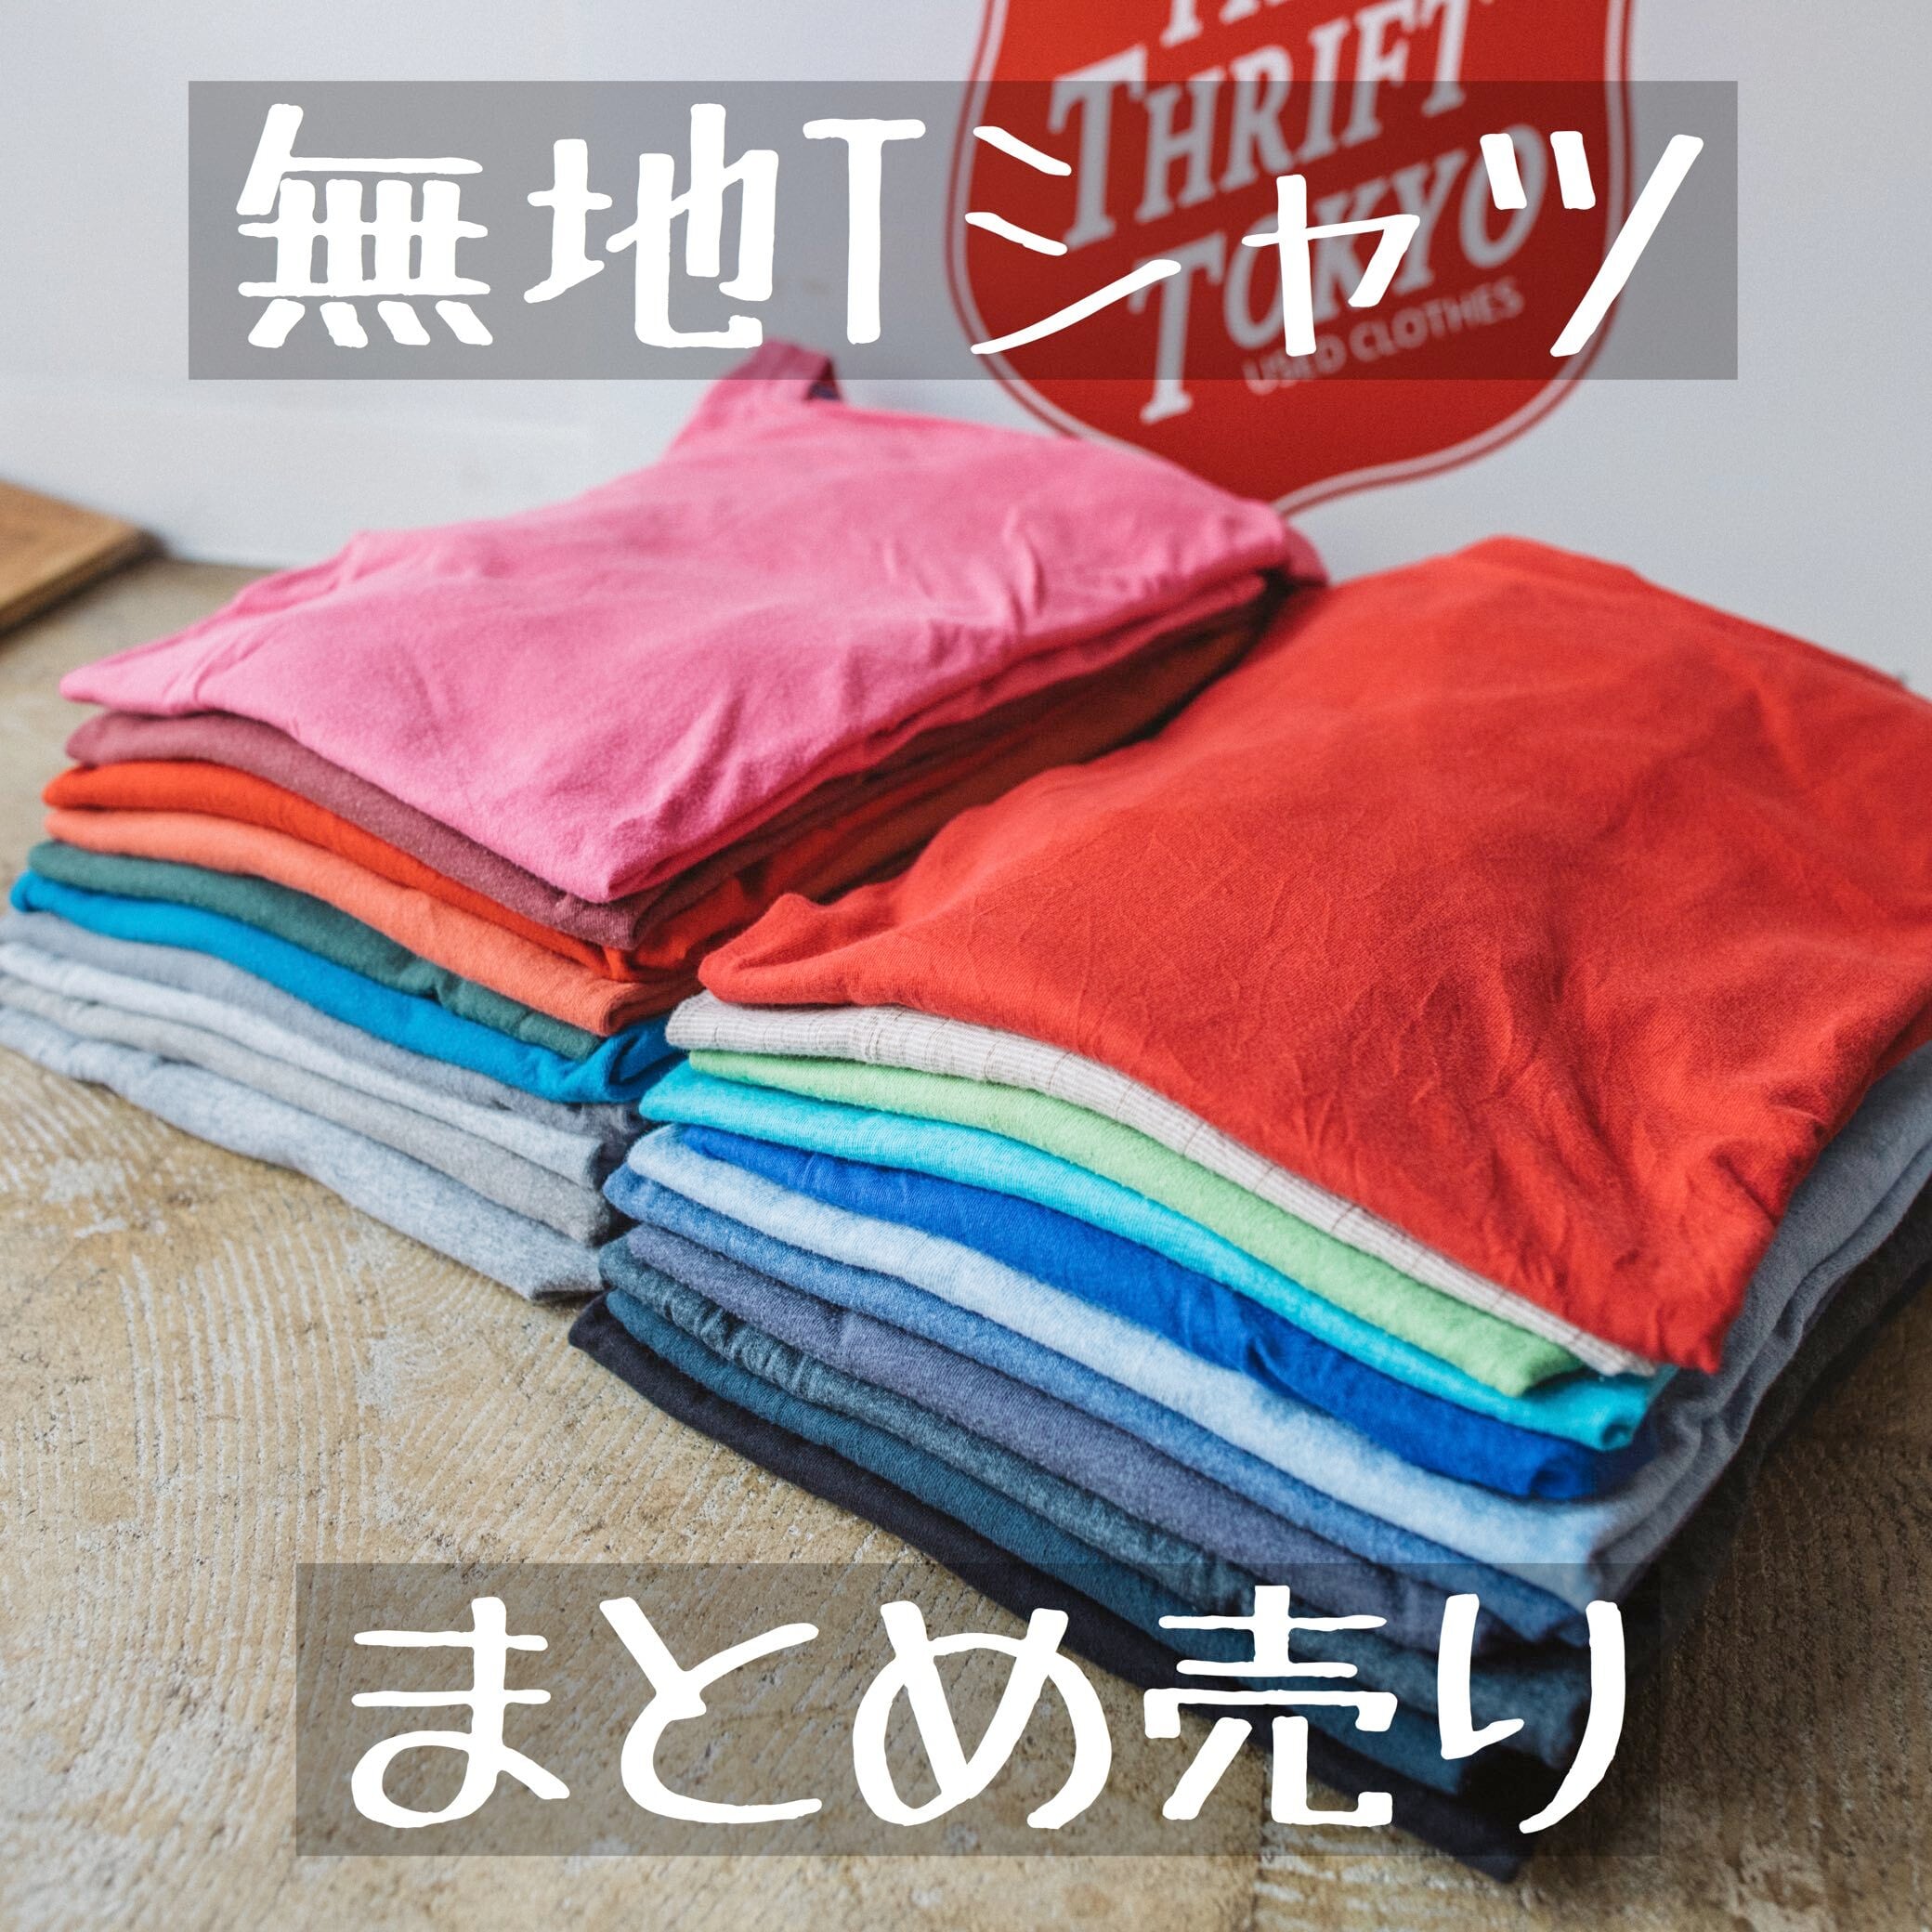 無地Tシャツまとめ売り XLサイズ 5着セット | 【公式】Thrift Tokyo ...